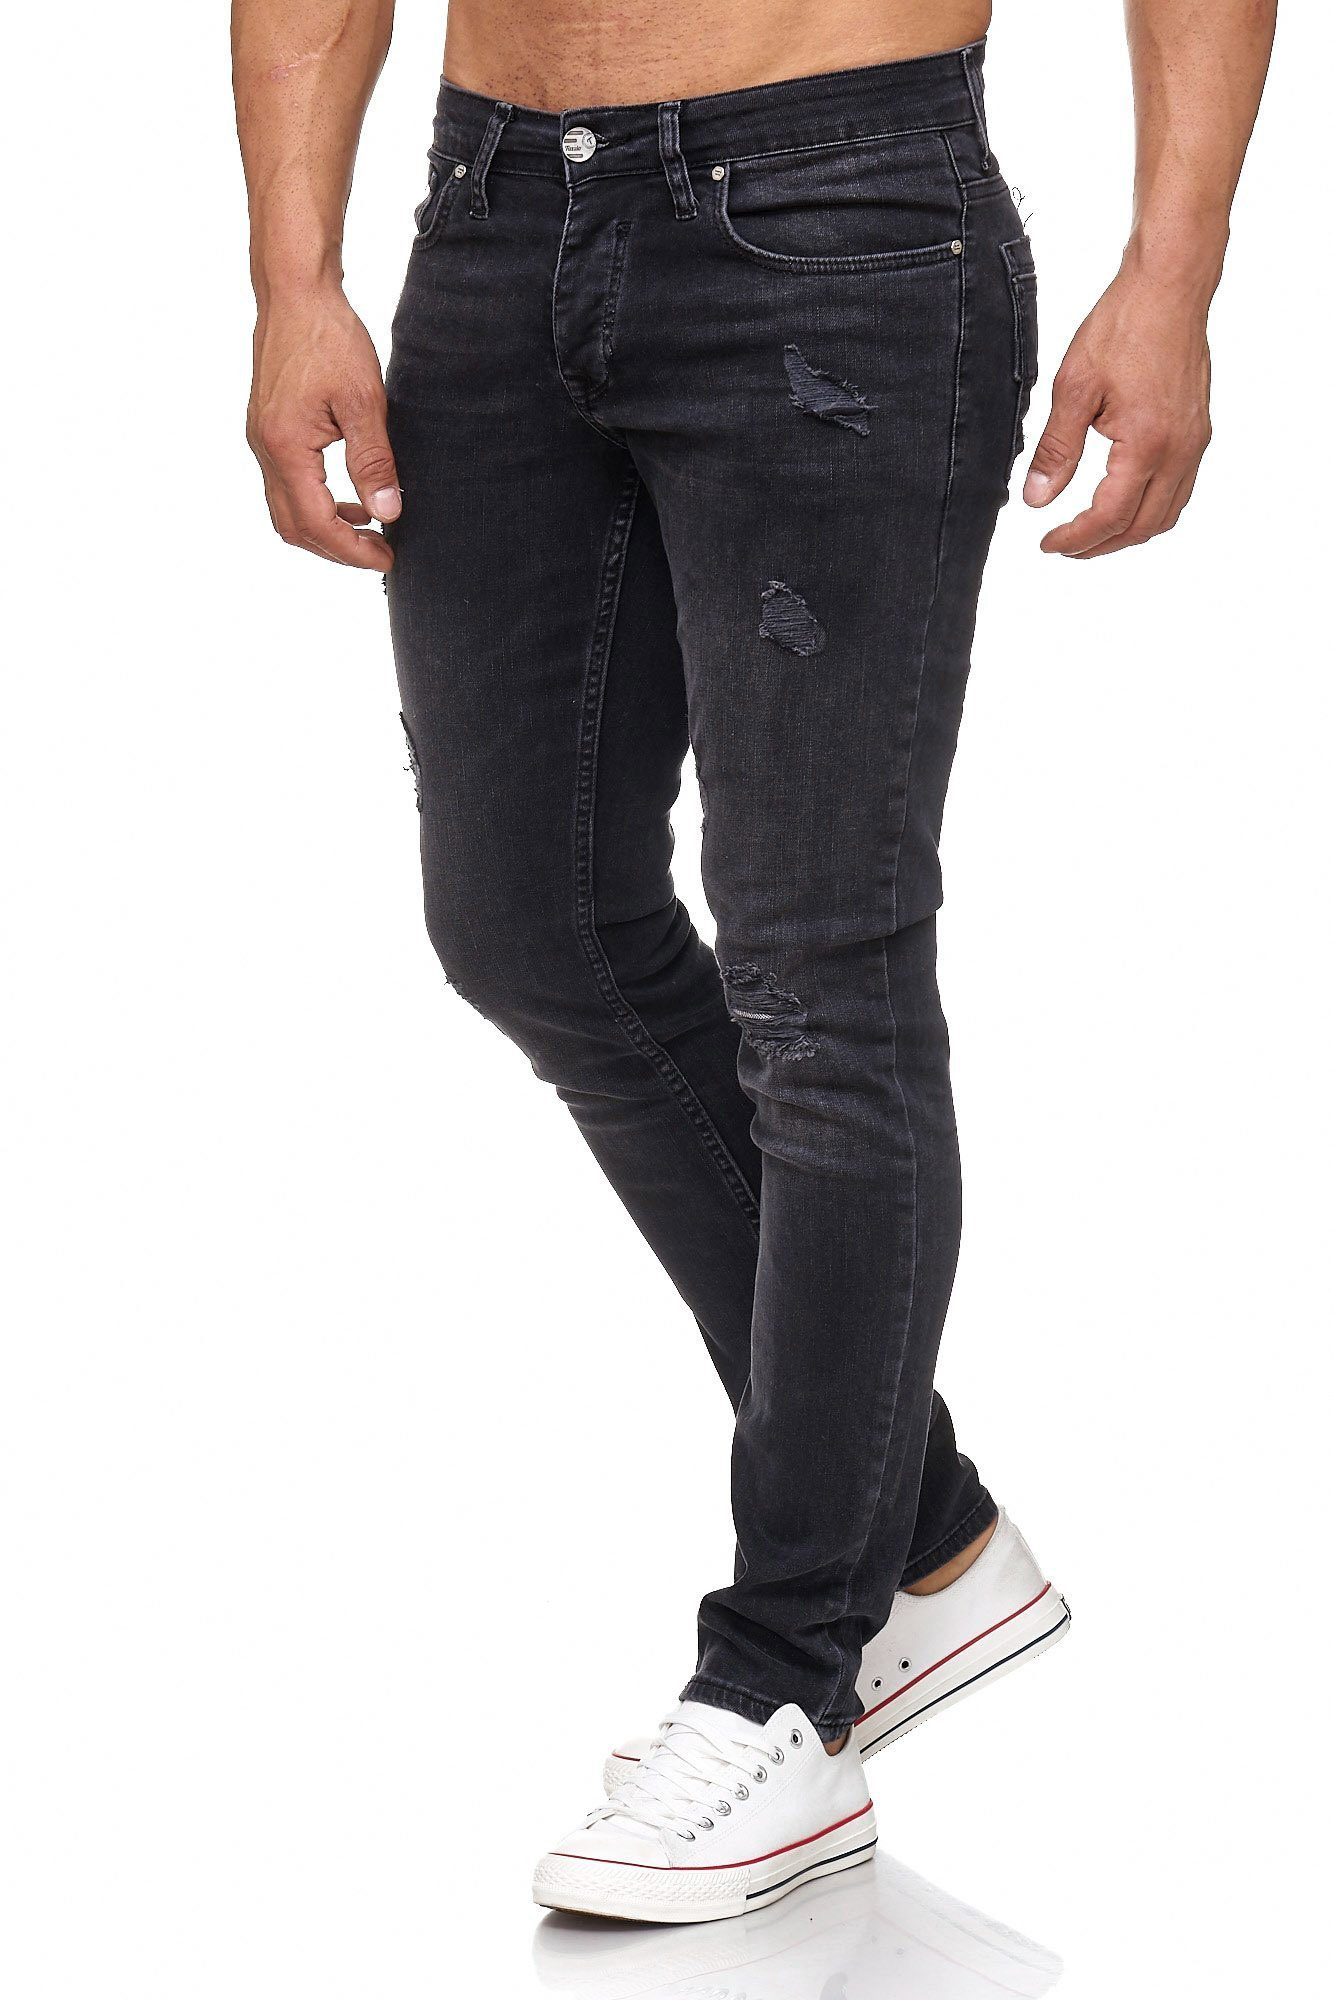 Tazzio Slim-fit-Jeans 17502 schwarz Destroyed-Look im